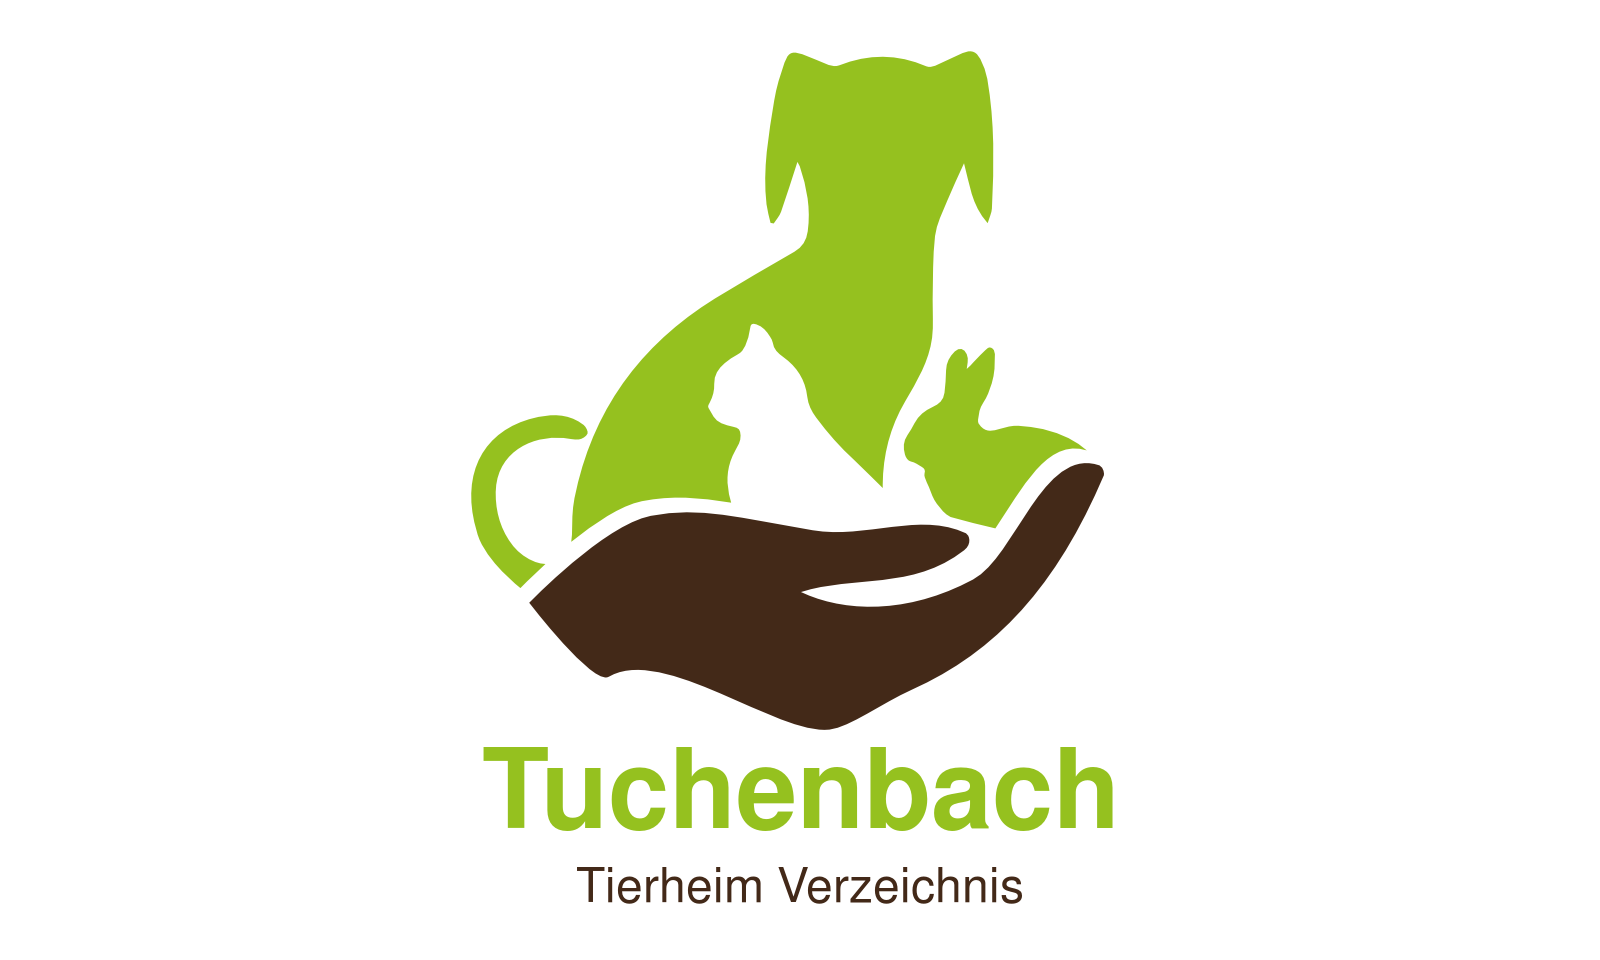 Tierheim Tuchenbach